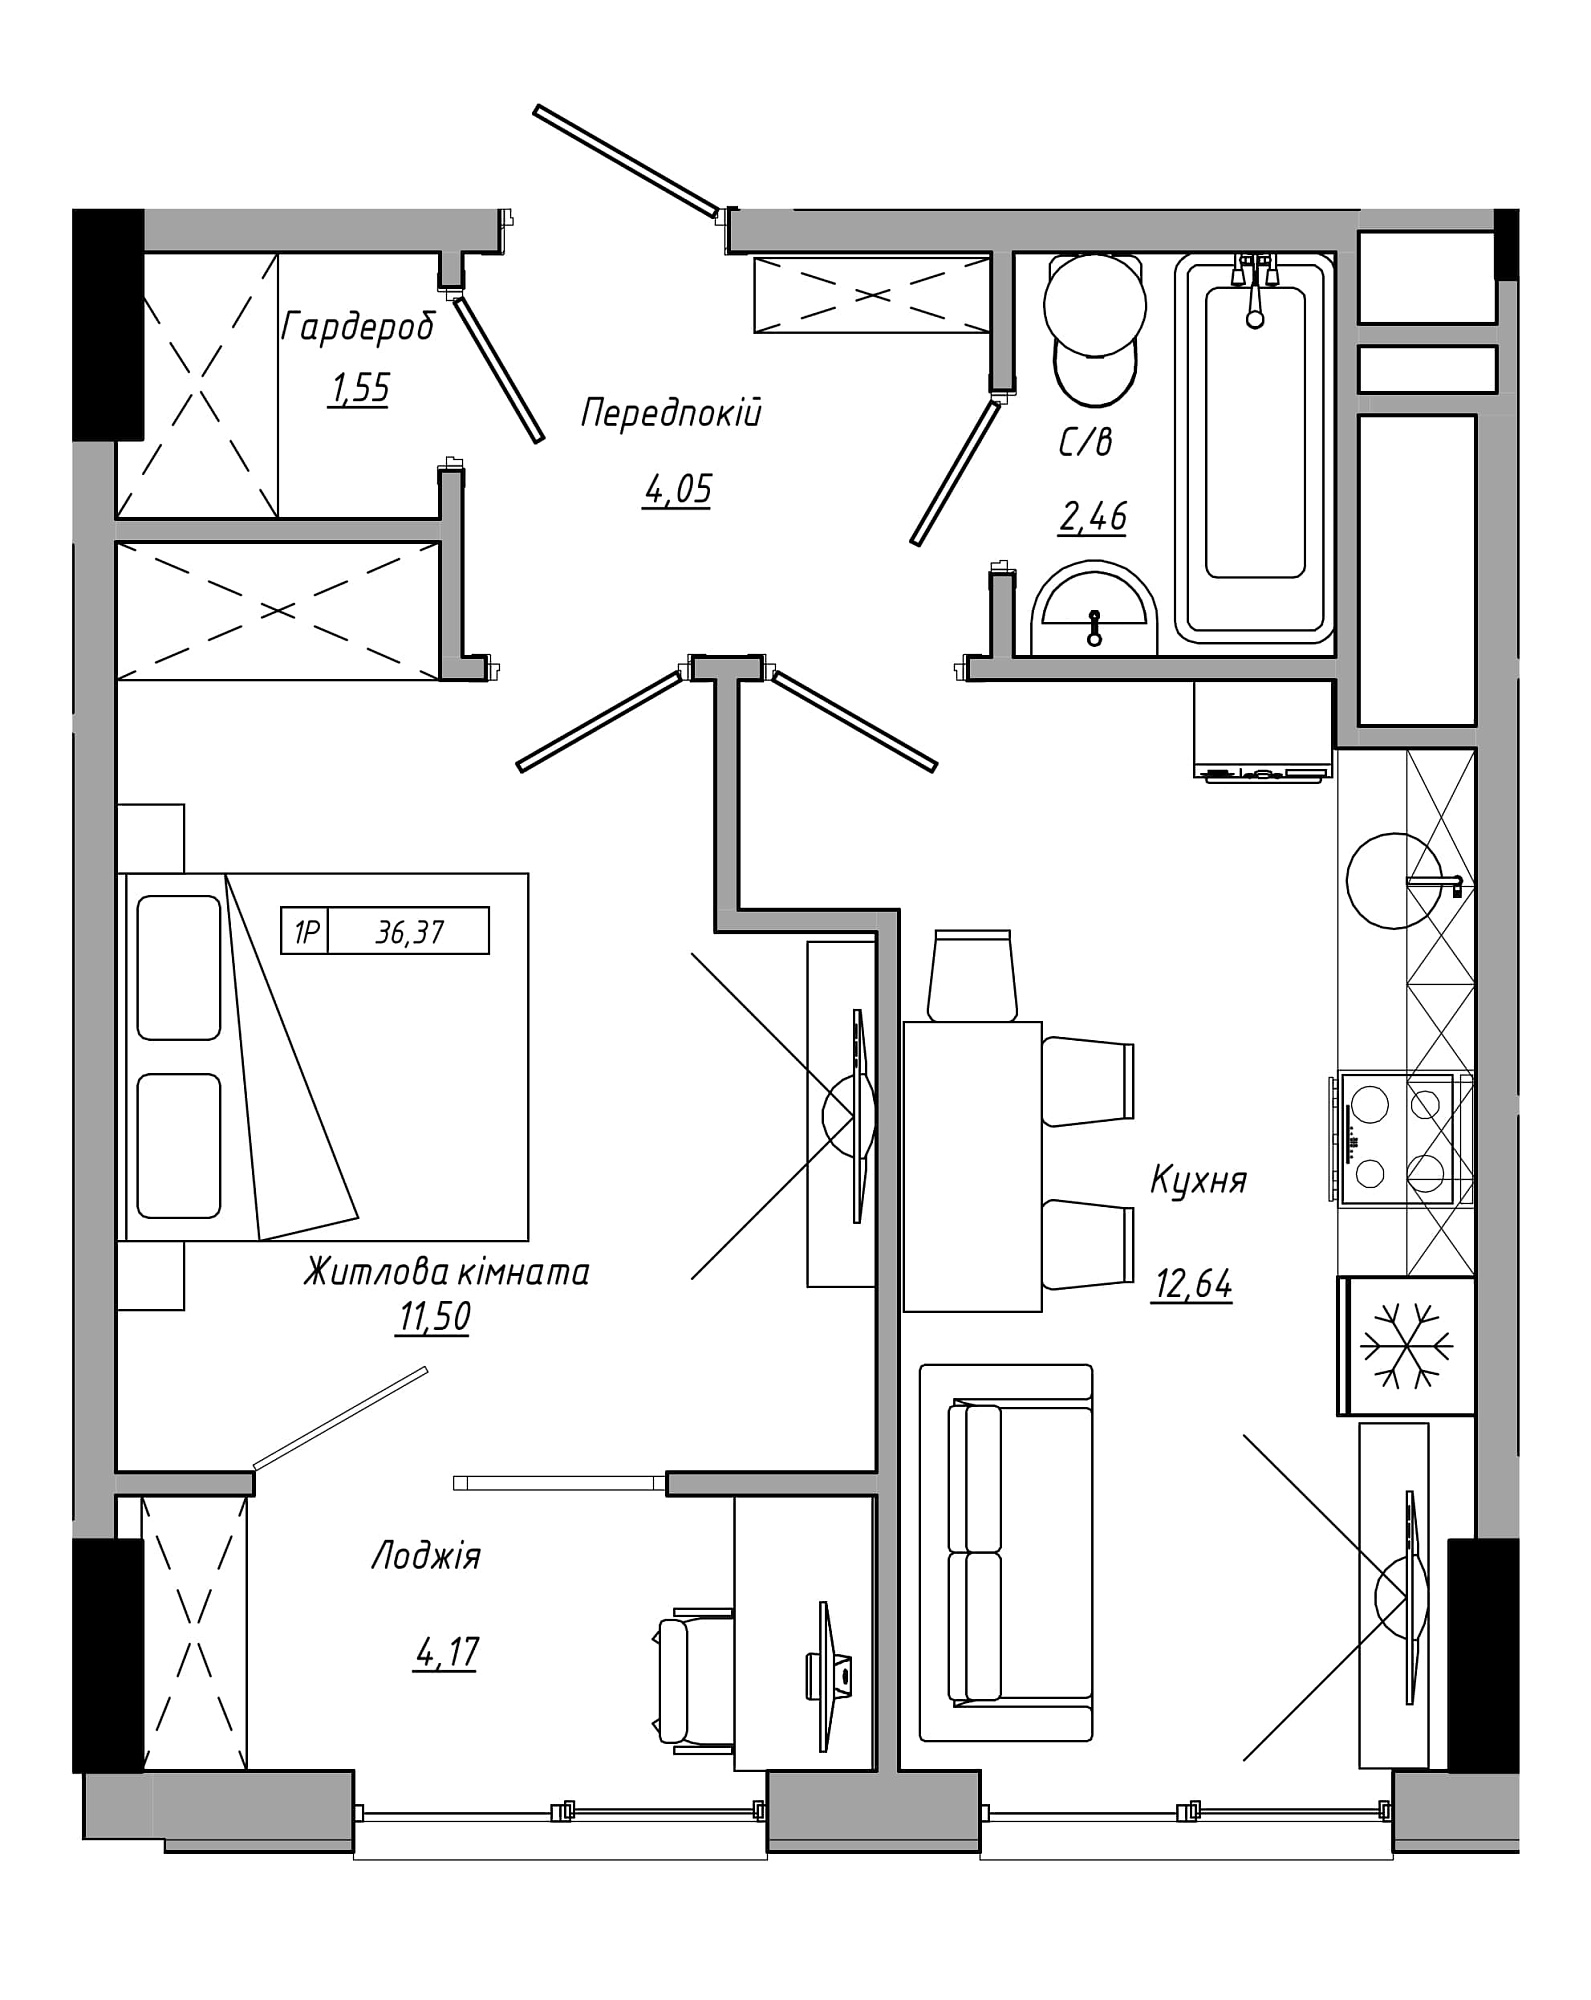 Планування 1-к квартира площею 36.37м2, AB-21-08/00020.